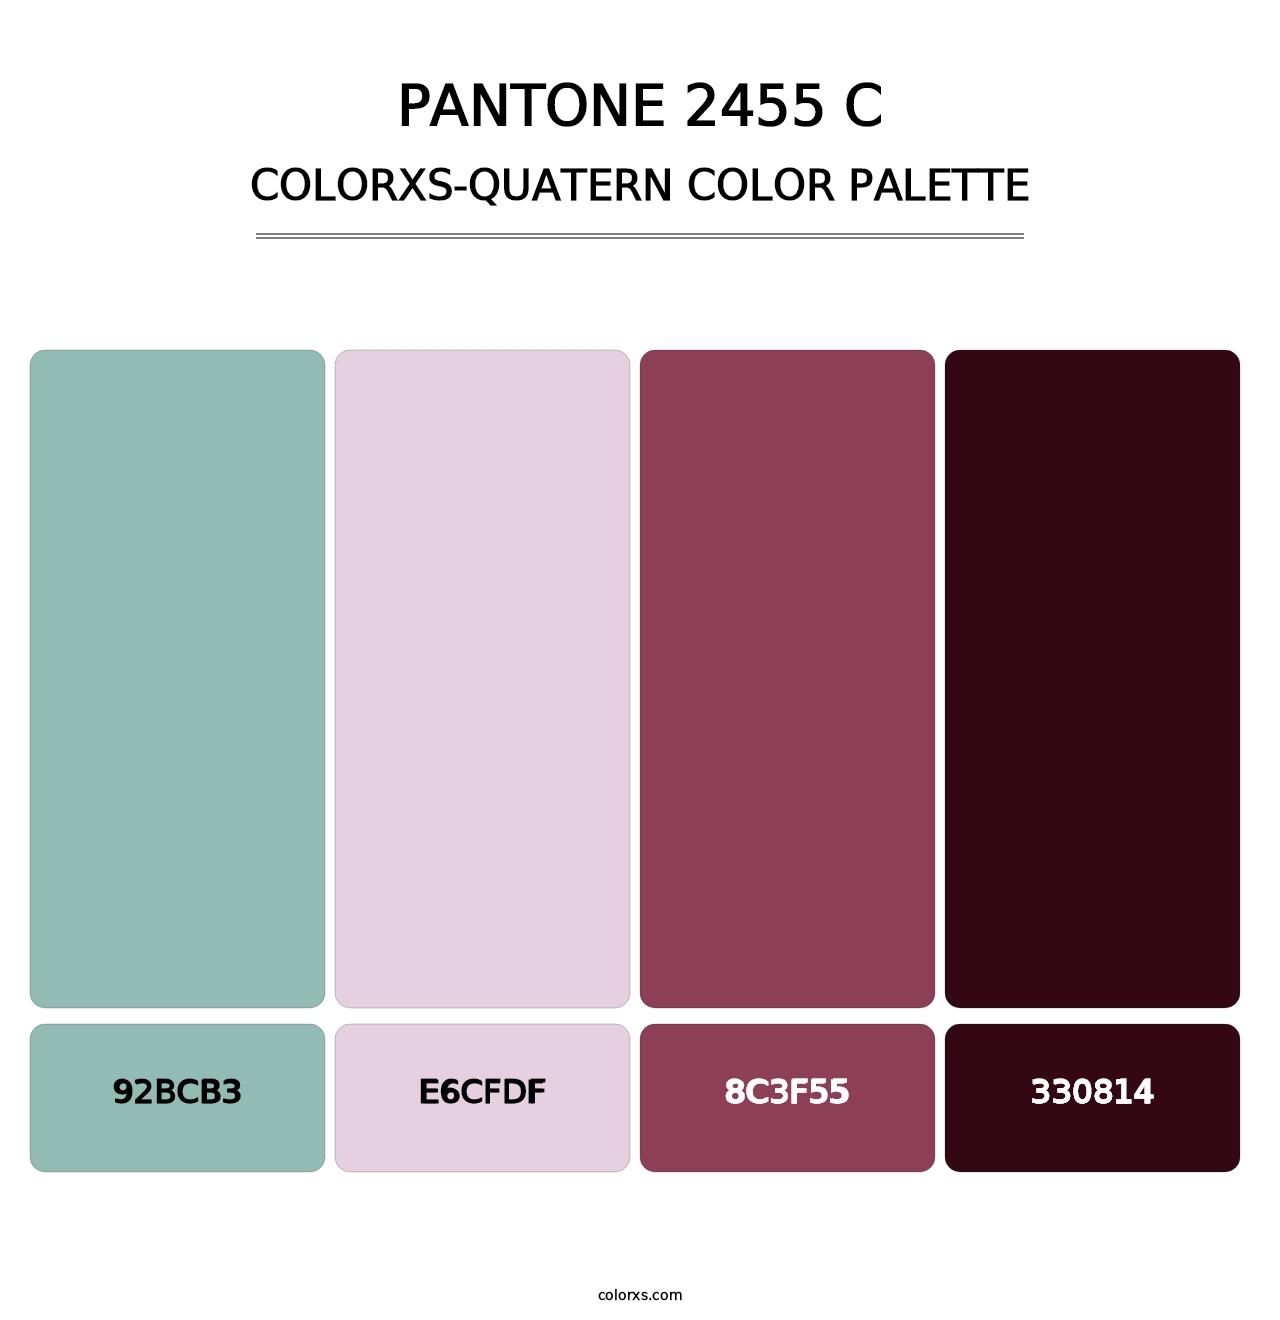 PANTONE 2455 C - Colorxs Quatern Palette